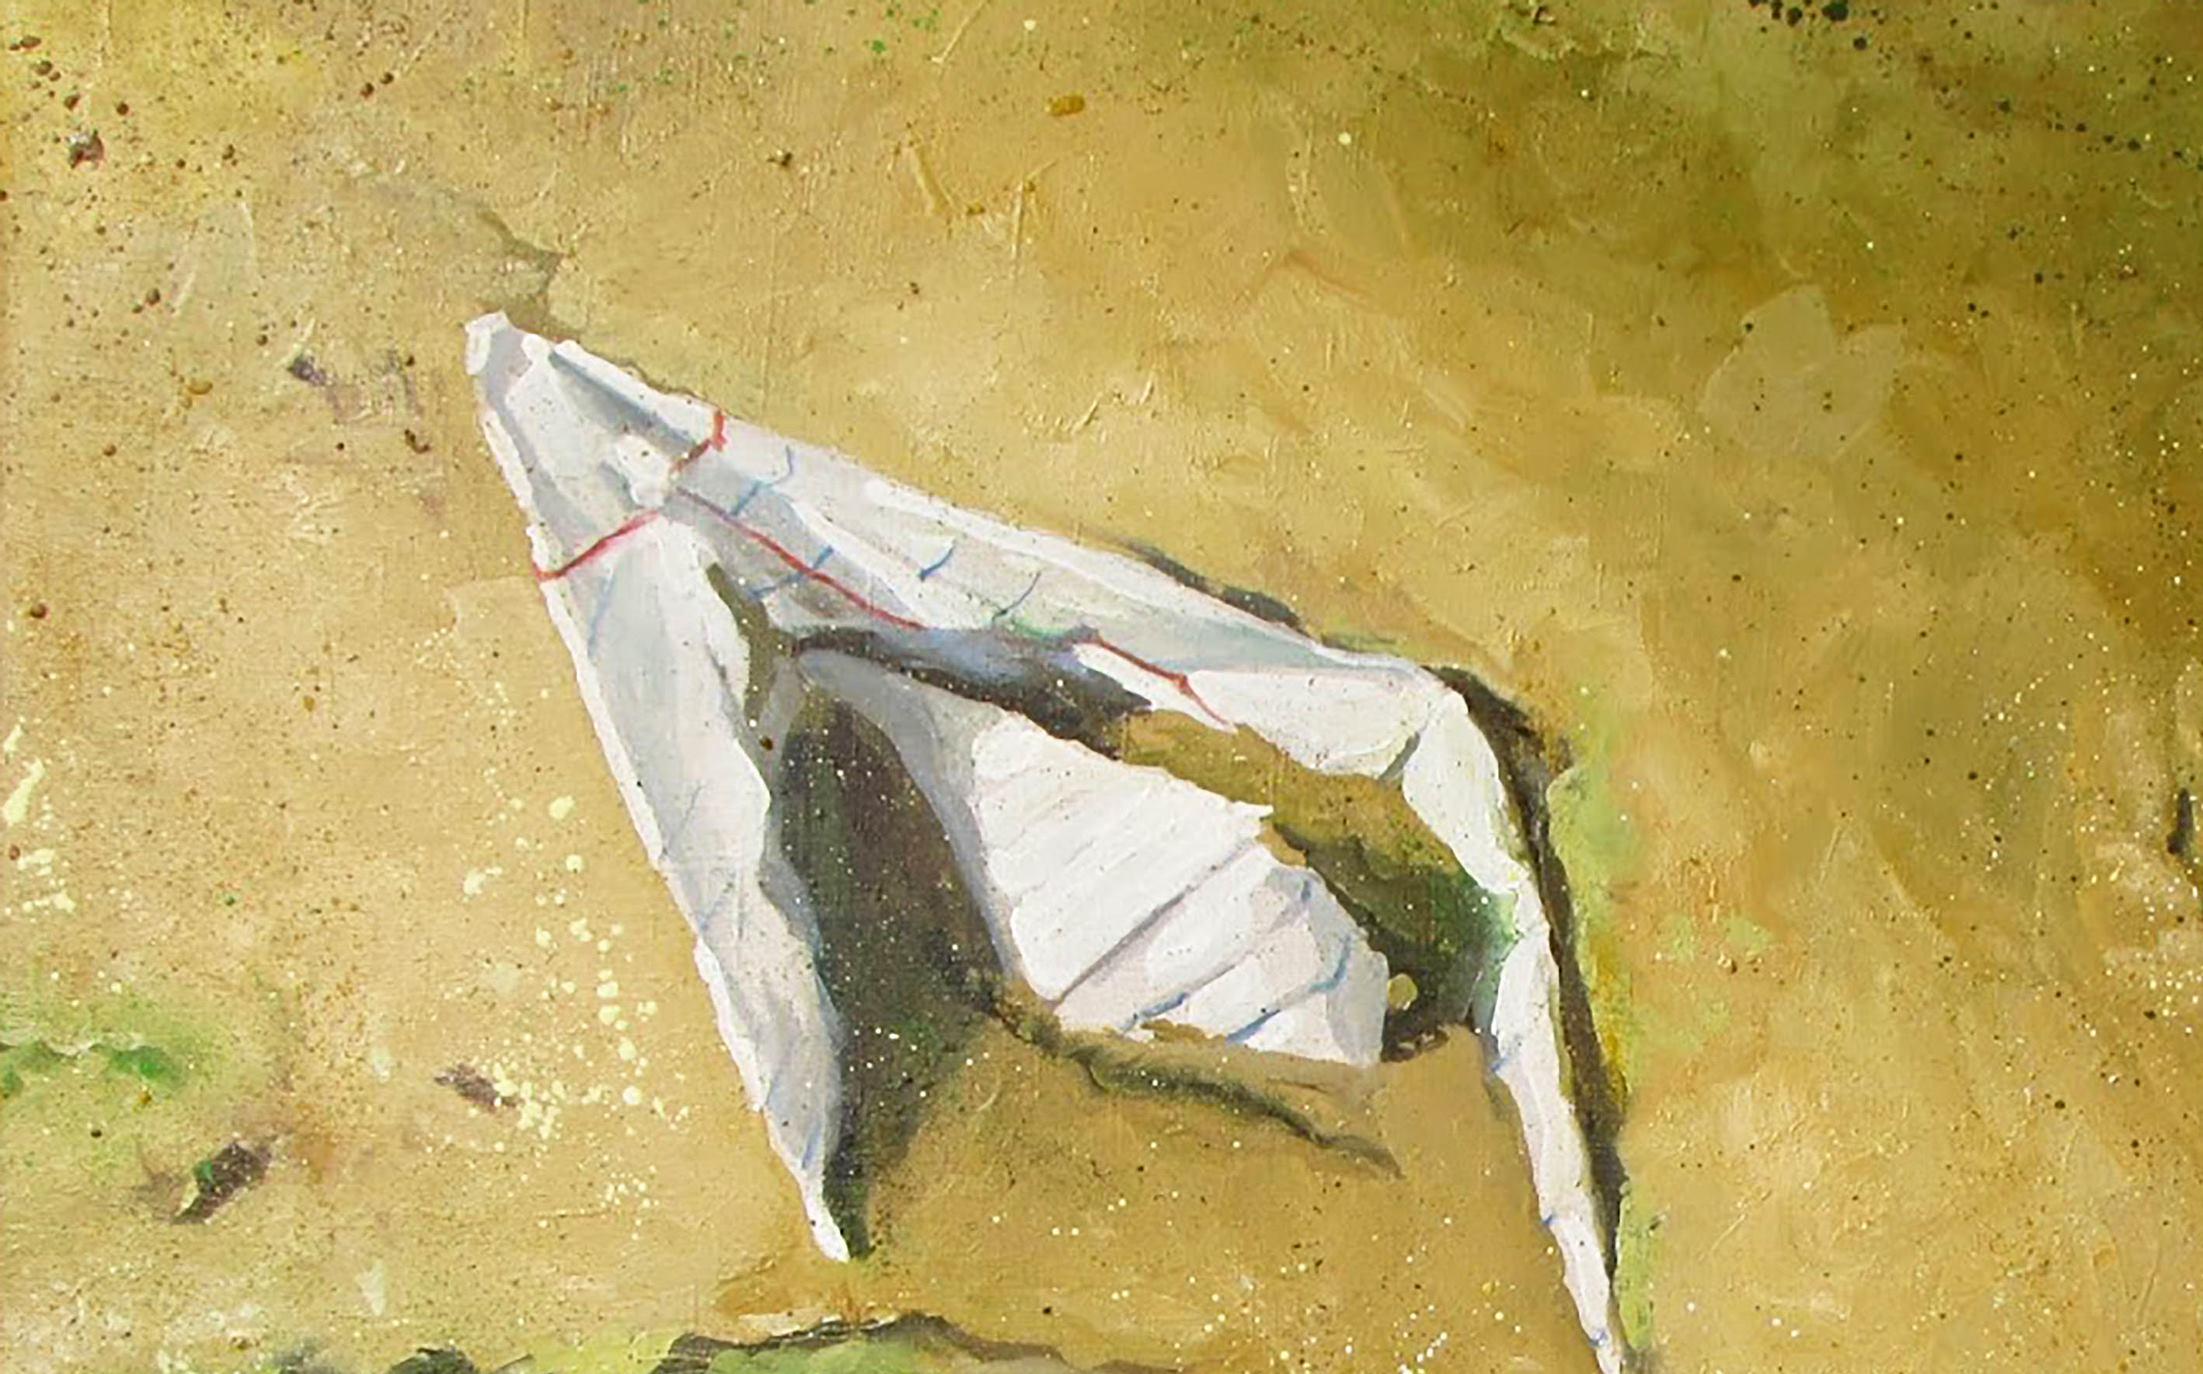 Artiste : Varvarov Anatoly Viktorovich
Titre : Oubliés,
Taille : 27.5x35.5 pouces, (70x90 cm)
Médium : Huile sur toile
Peint à la main, original, unique en son genre.

Cette peinture à l'huile s'intitule 